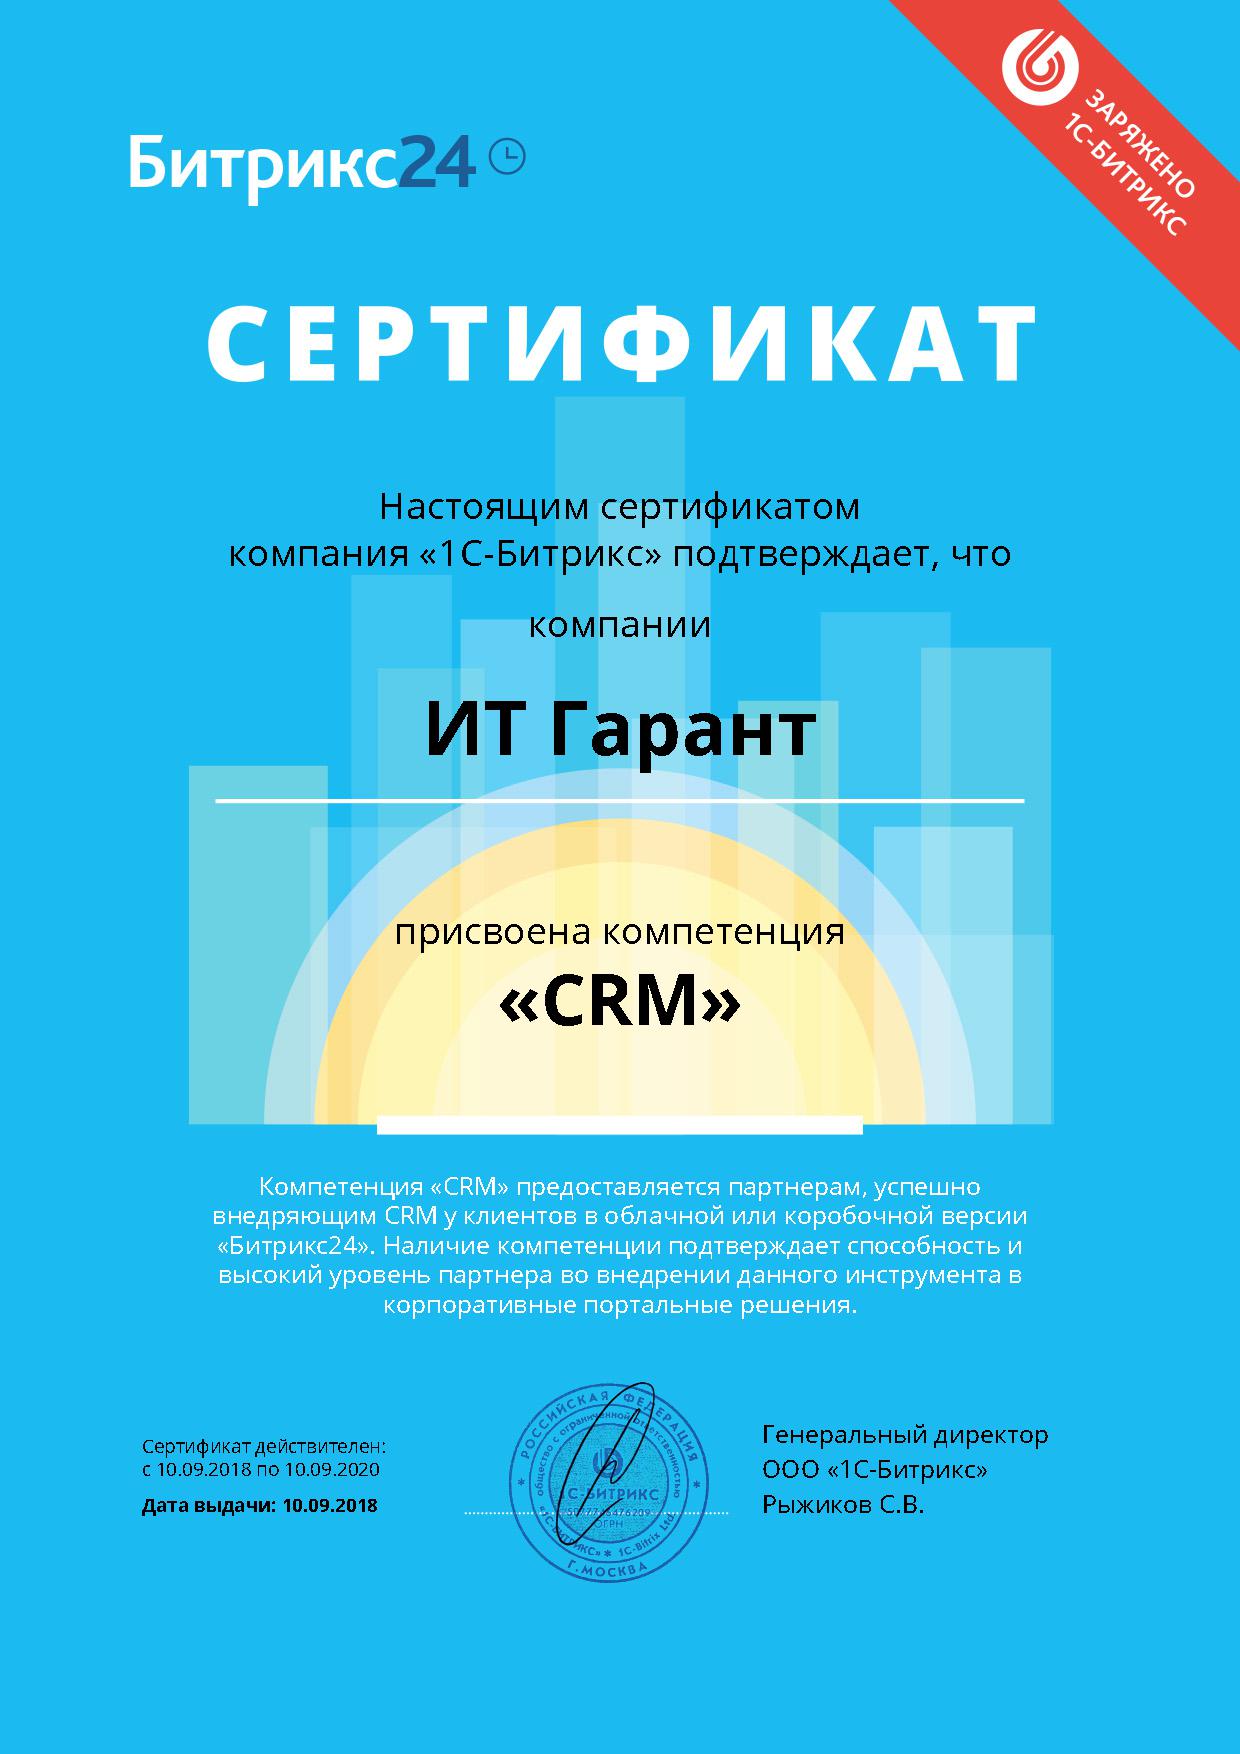 Сертификат о присвоениии компетенции CRM